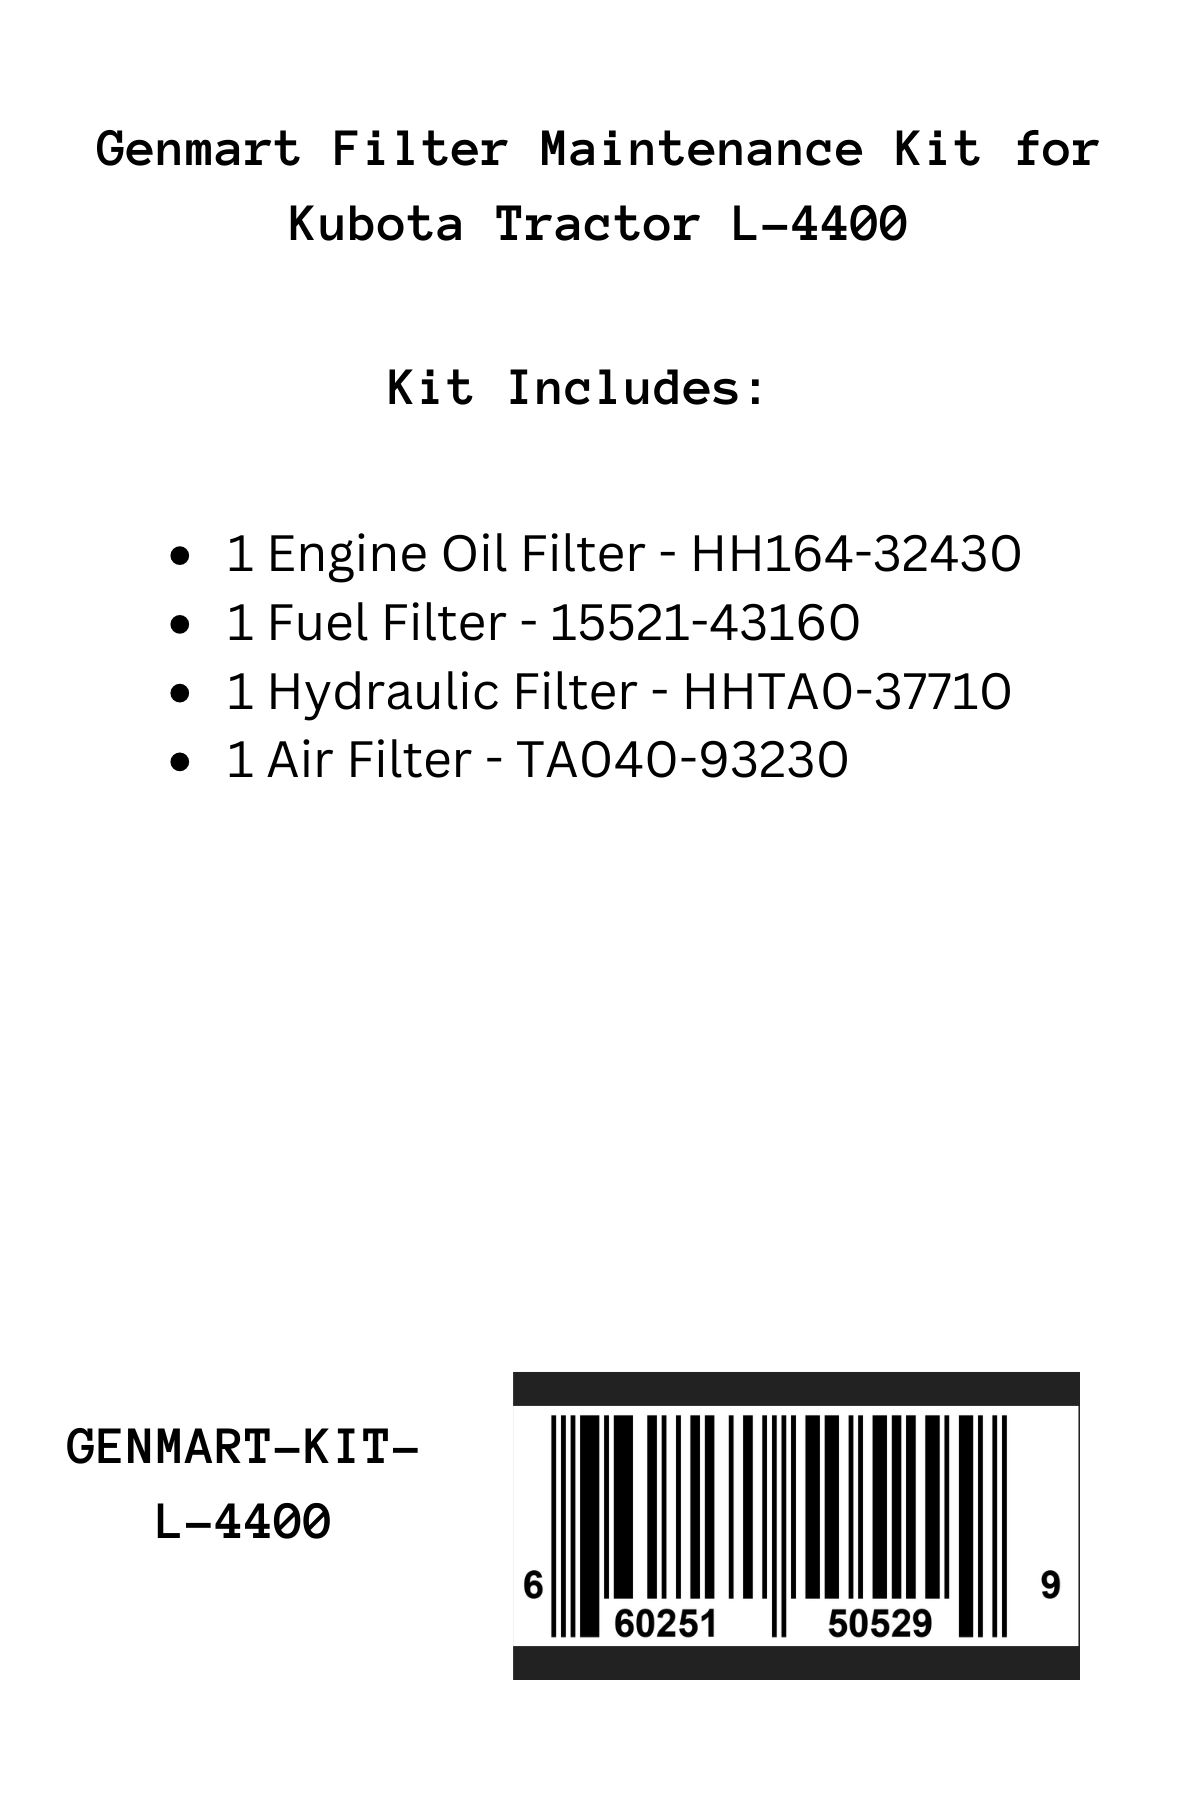 Genmart Filter Maintenance Kit for Kubota Tractor L-4400